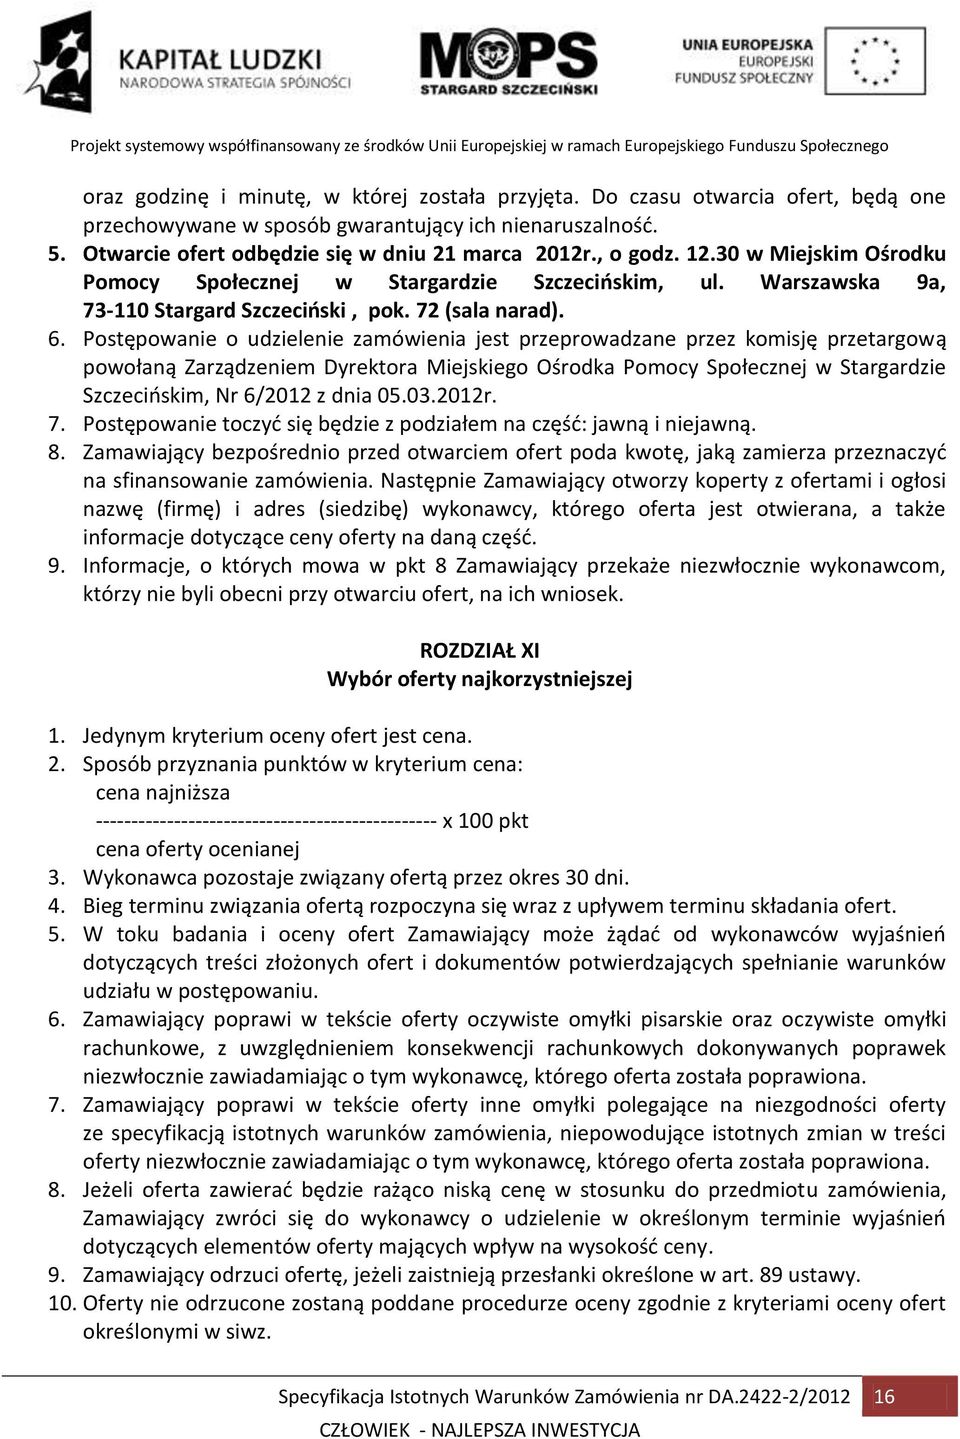 Postępowanie o udzielenie zamówienia jest przeprowadzane przez komisję przetargową powołaną Zarządzeniem Dyrektora Miejskiego Ośrodka Pomocy Społecznej w Stargardzie Szczecińskim, Nr 6/2012 z dnia 05.